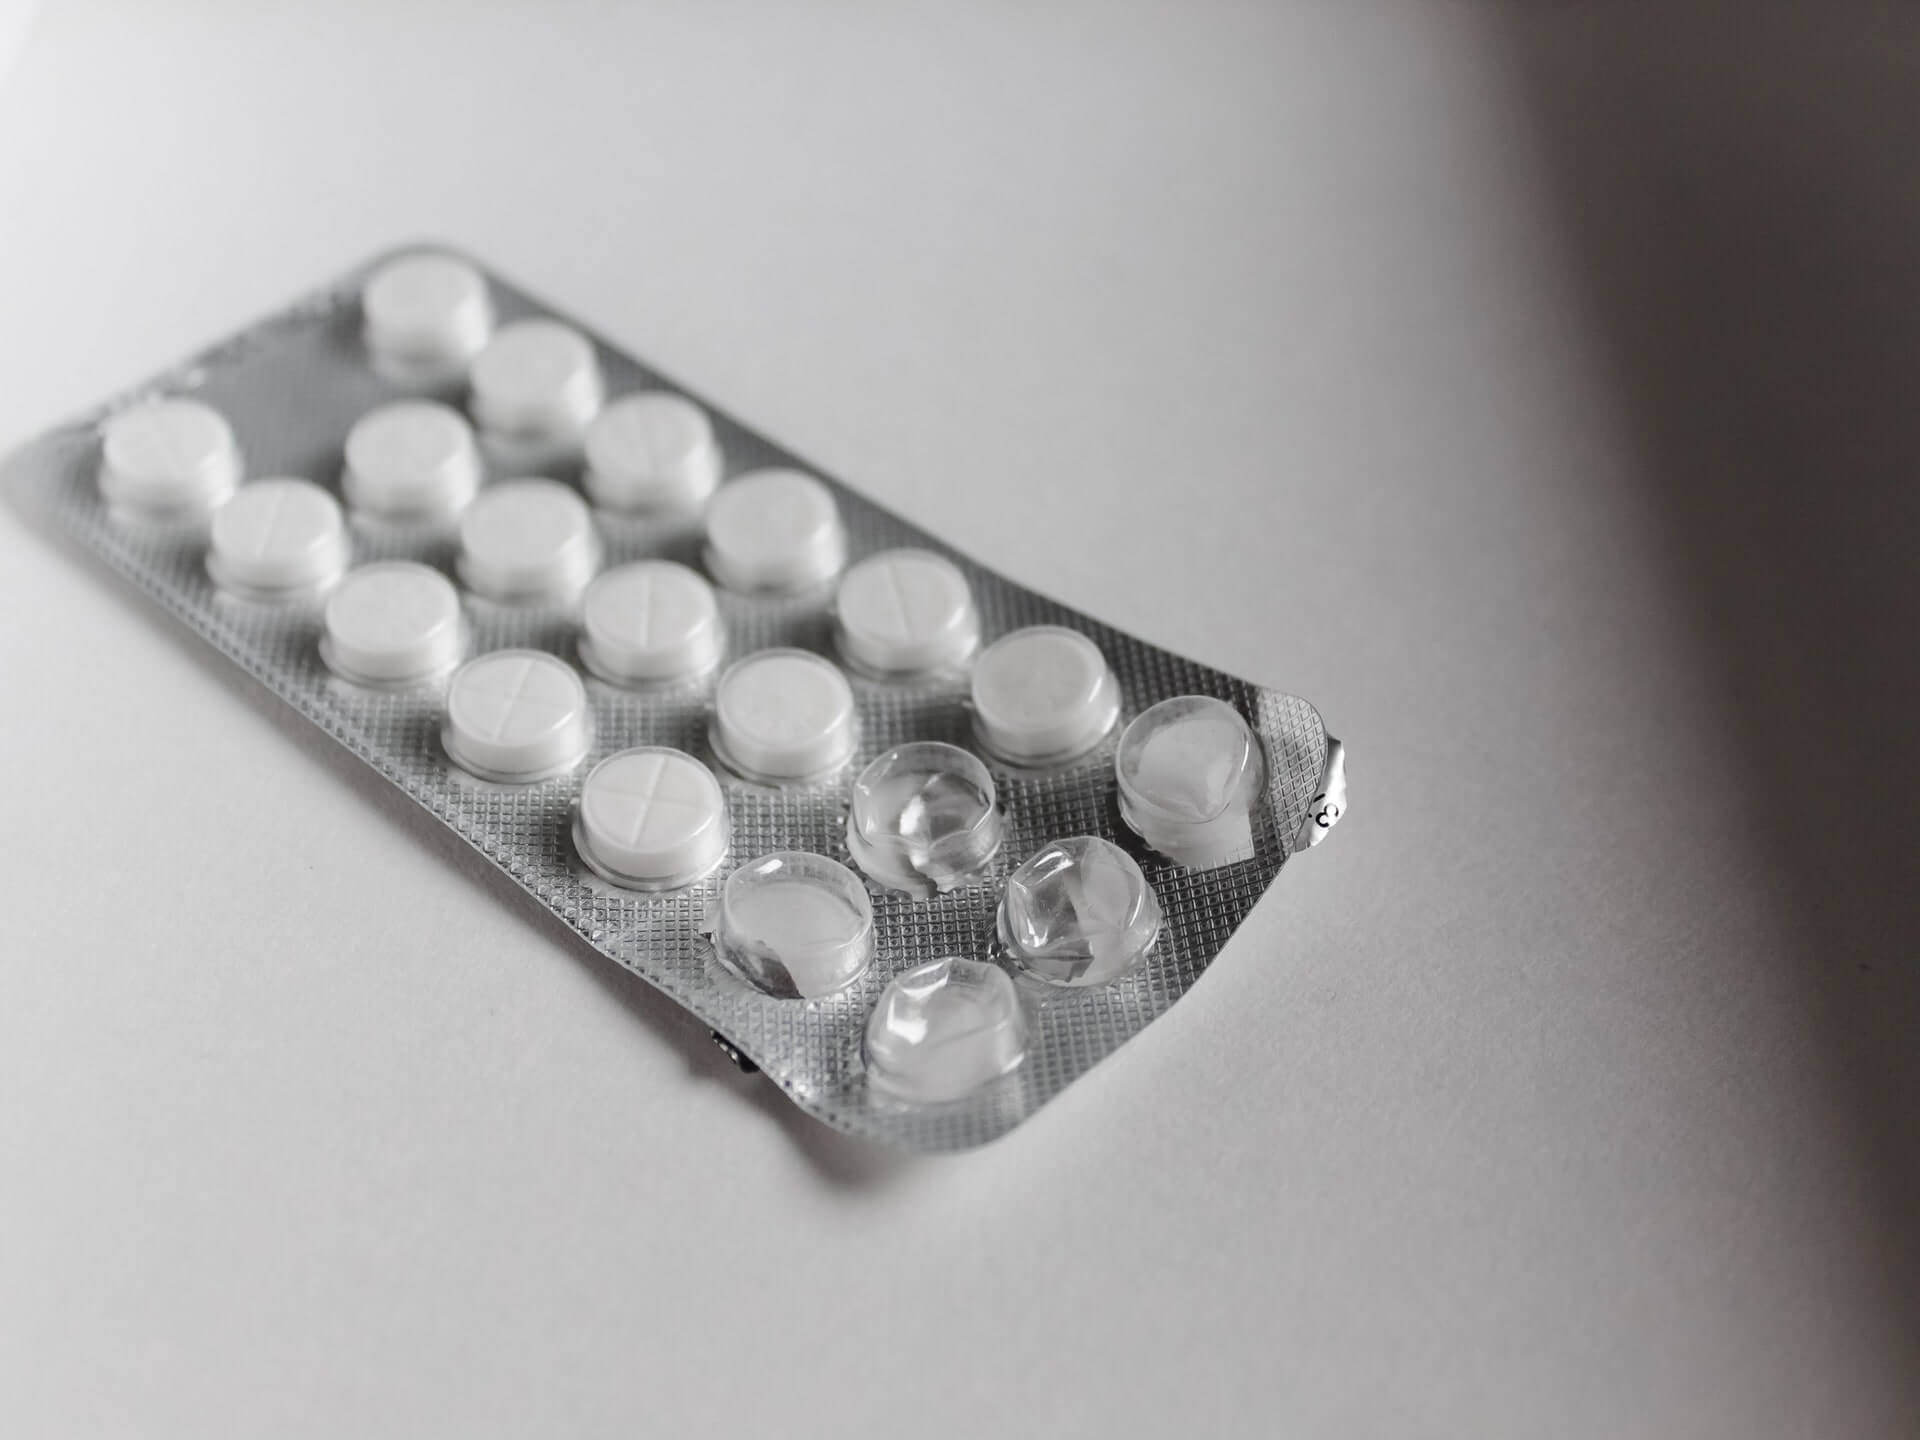 Does an aspirin a day keep cancer away?